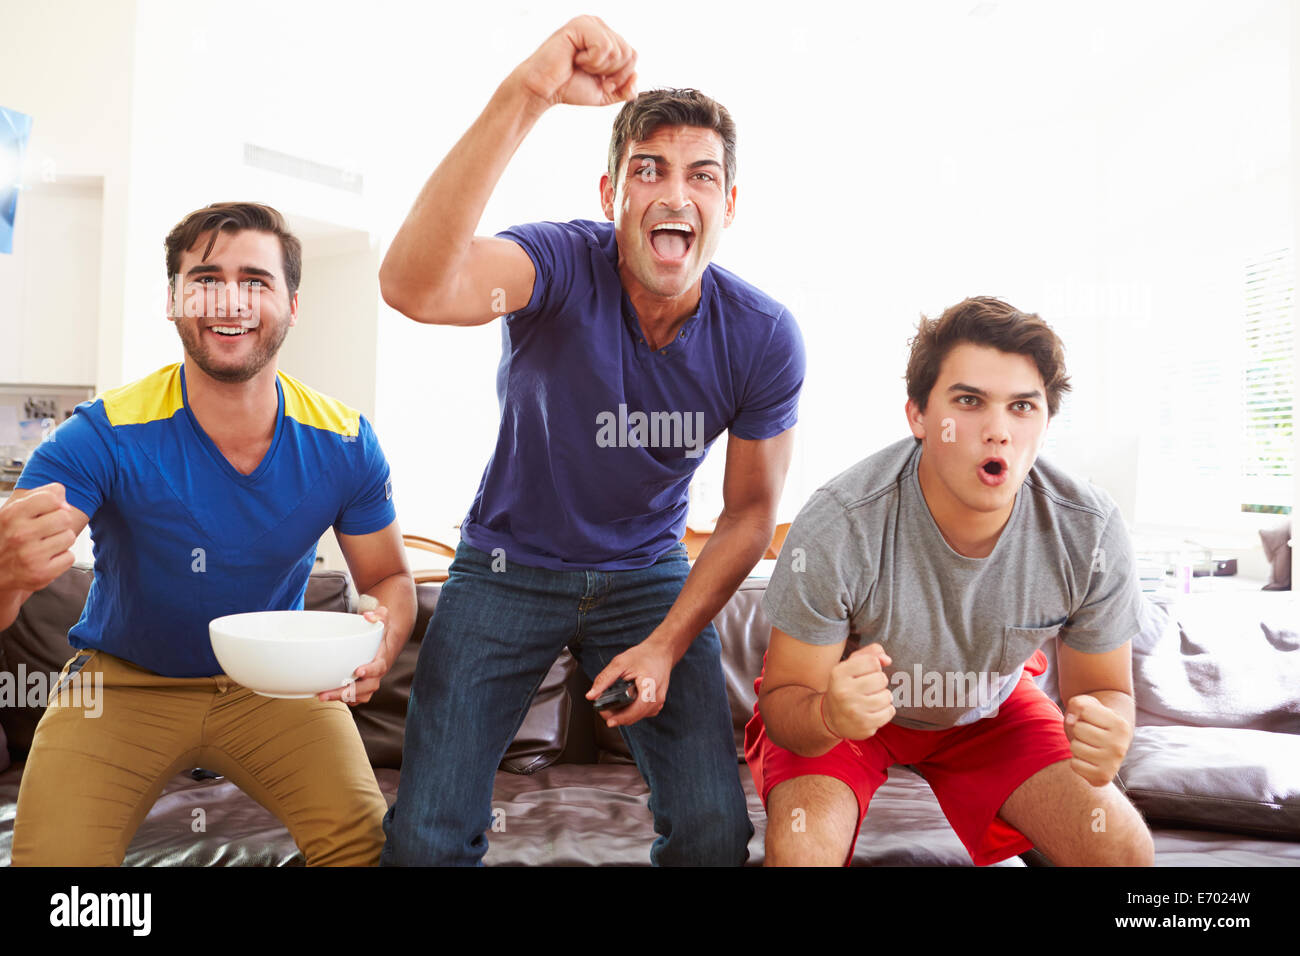 Gruppe von Männern auf Sofa beobachten Sport zusammen sitzen Stockfoto